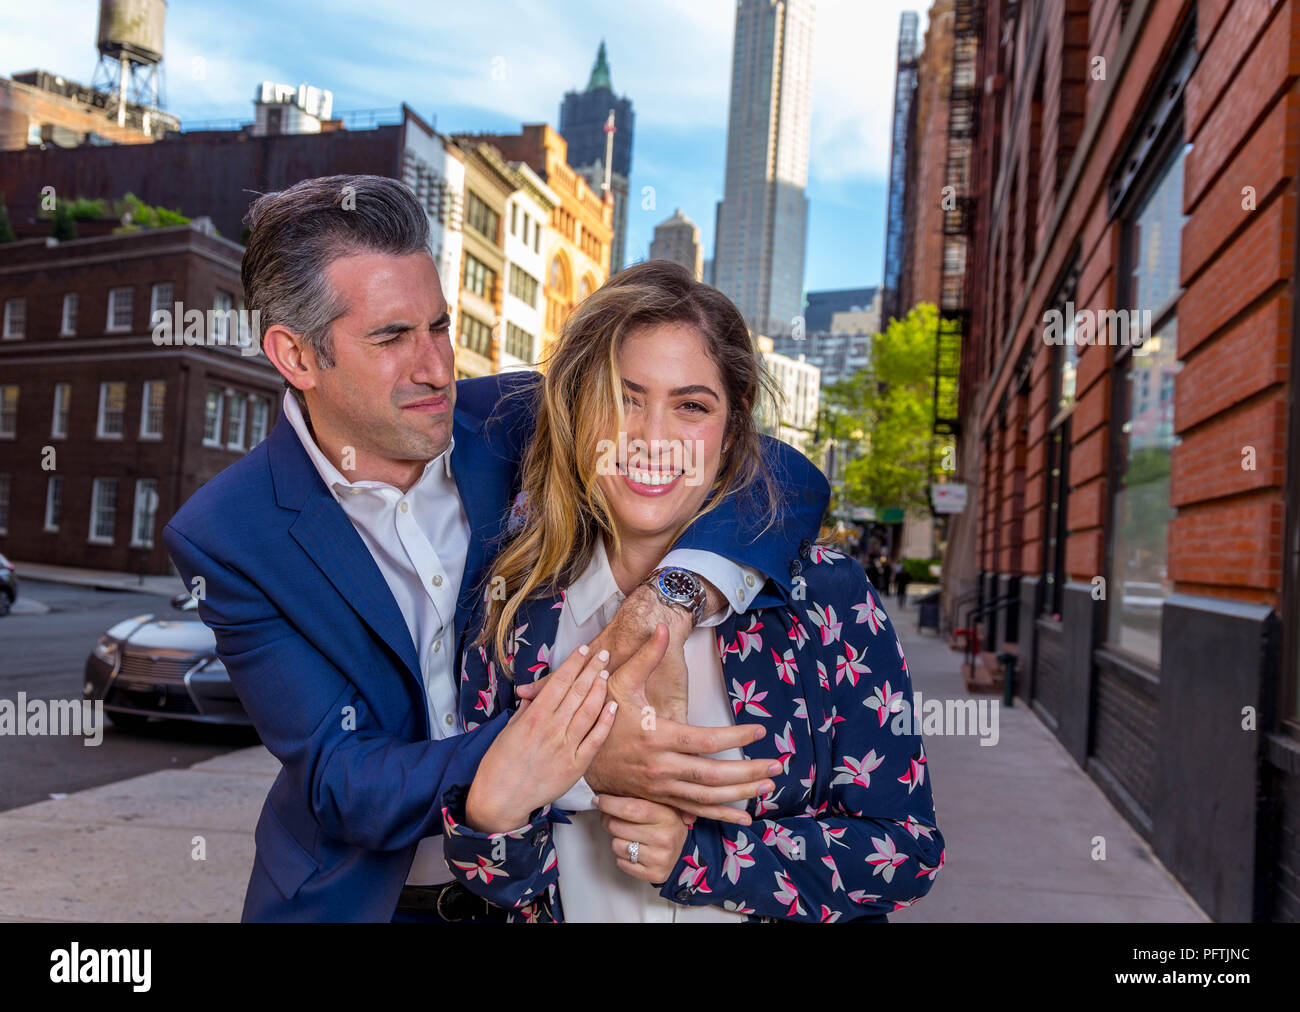 Caucasian New York City Man and Woman Couple stupide loi et avec amour dans les rues de Manhattan Banque D'Images